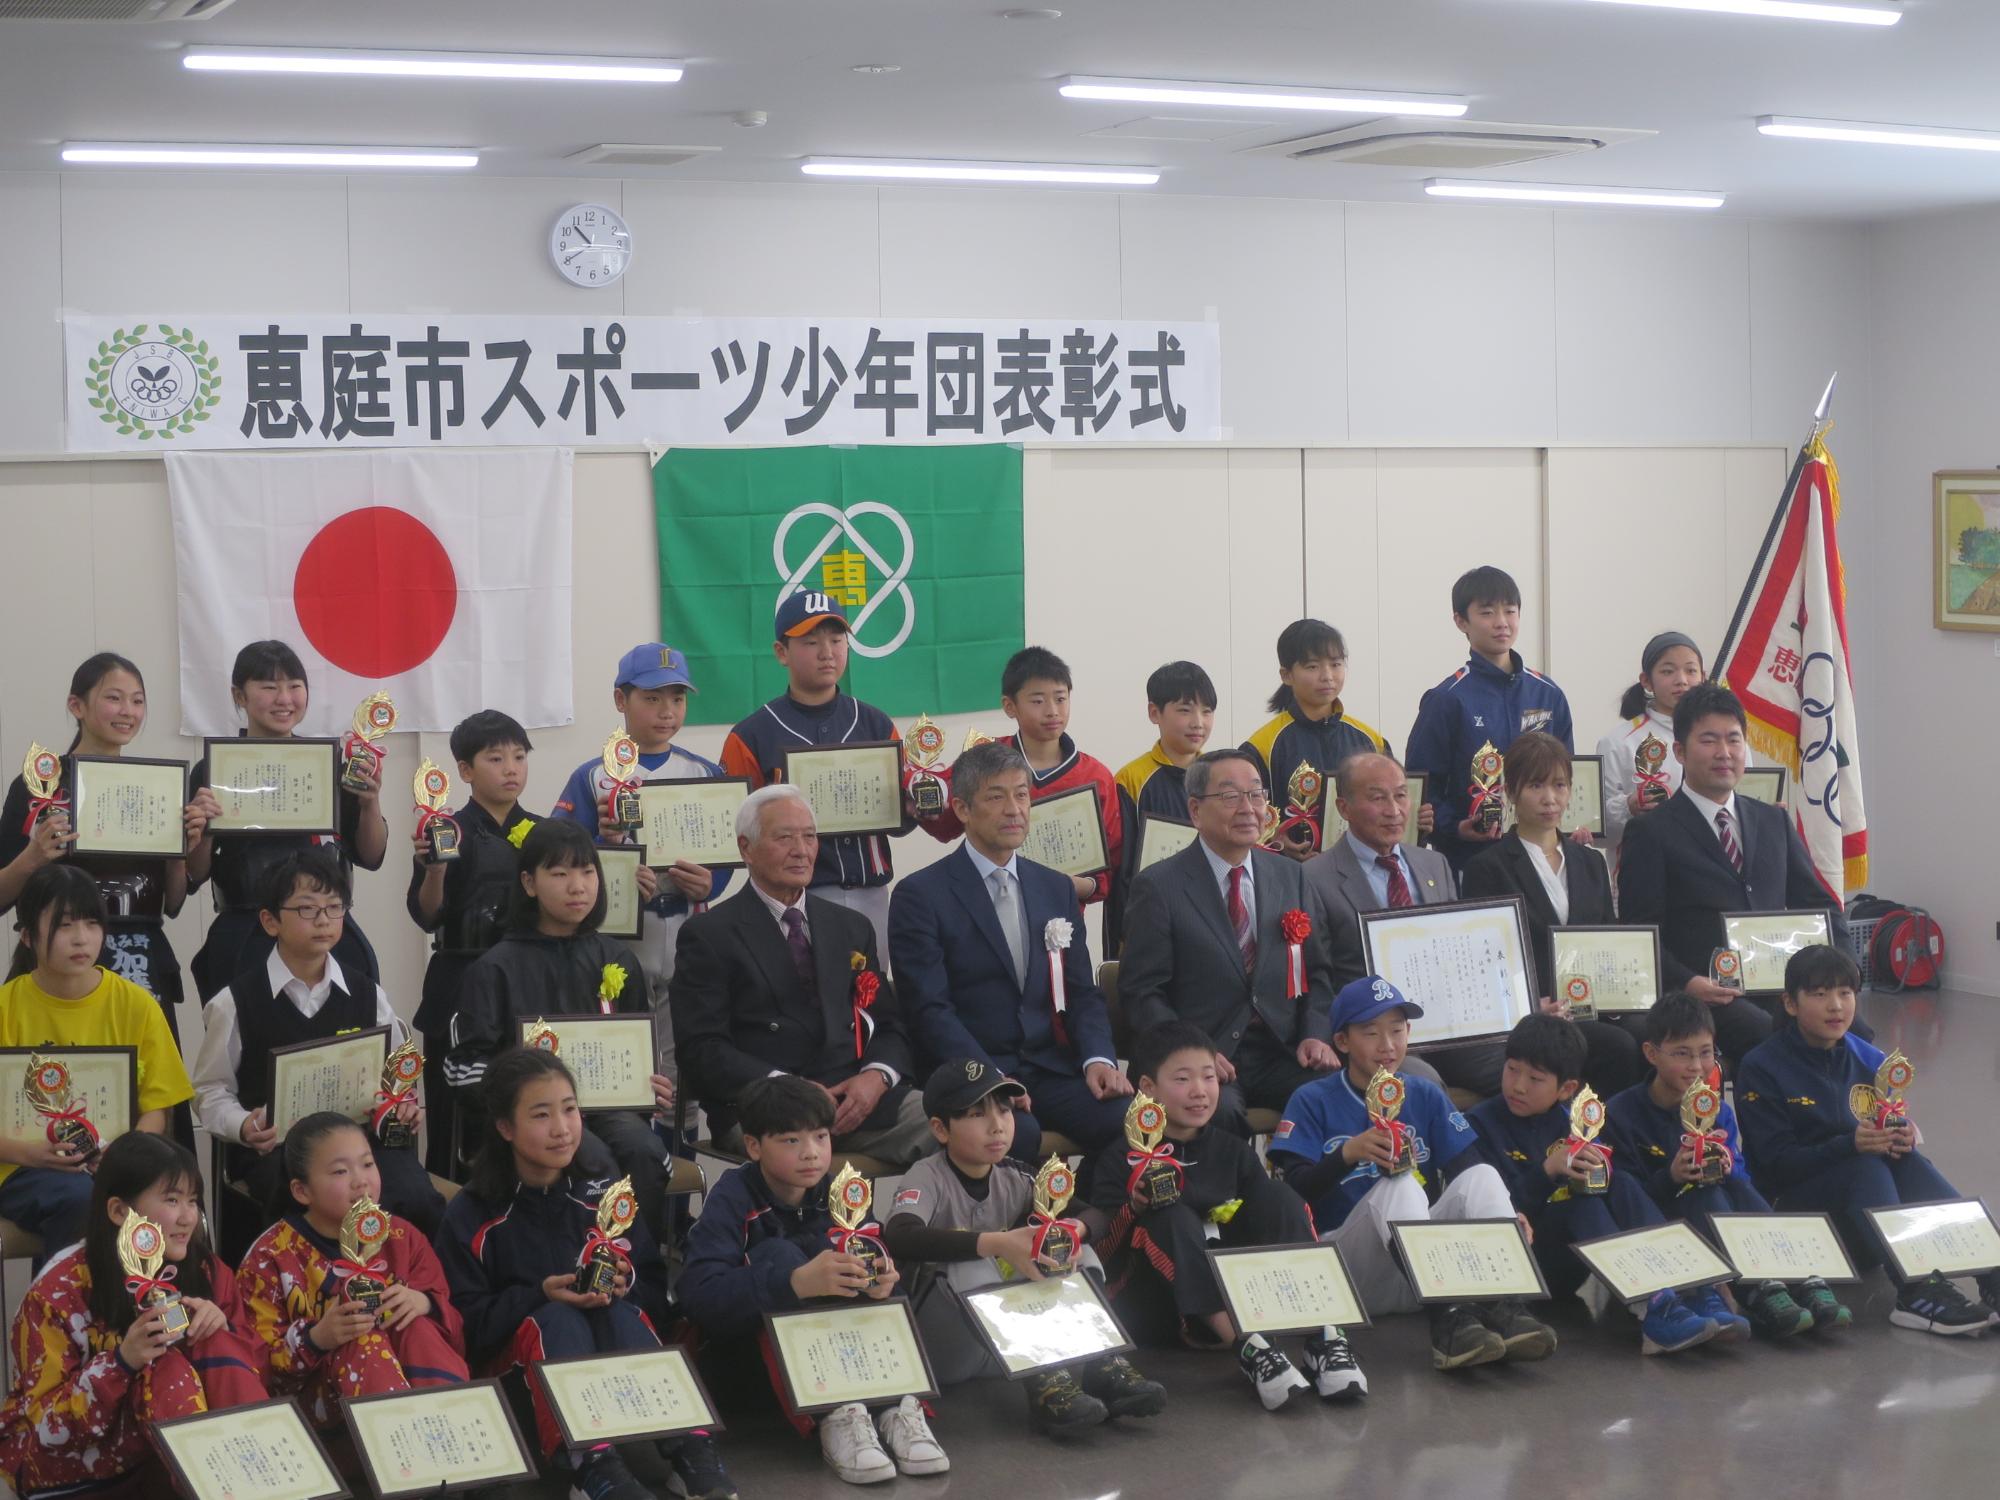 スポーツ少年団表彰式で記念撮影する原田市長